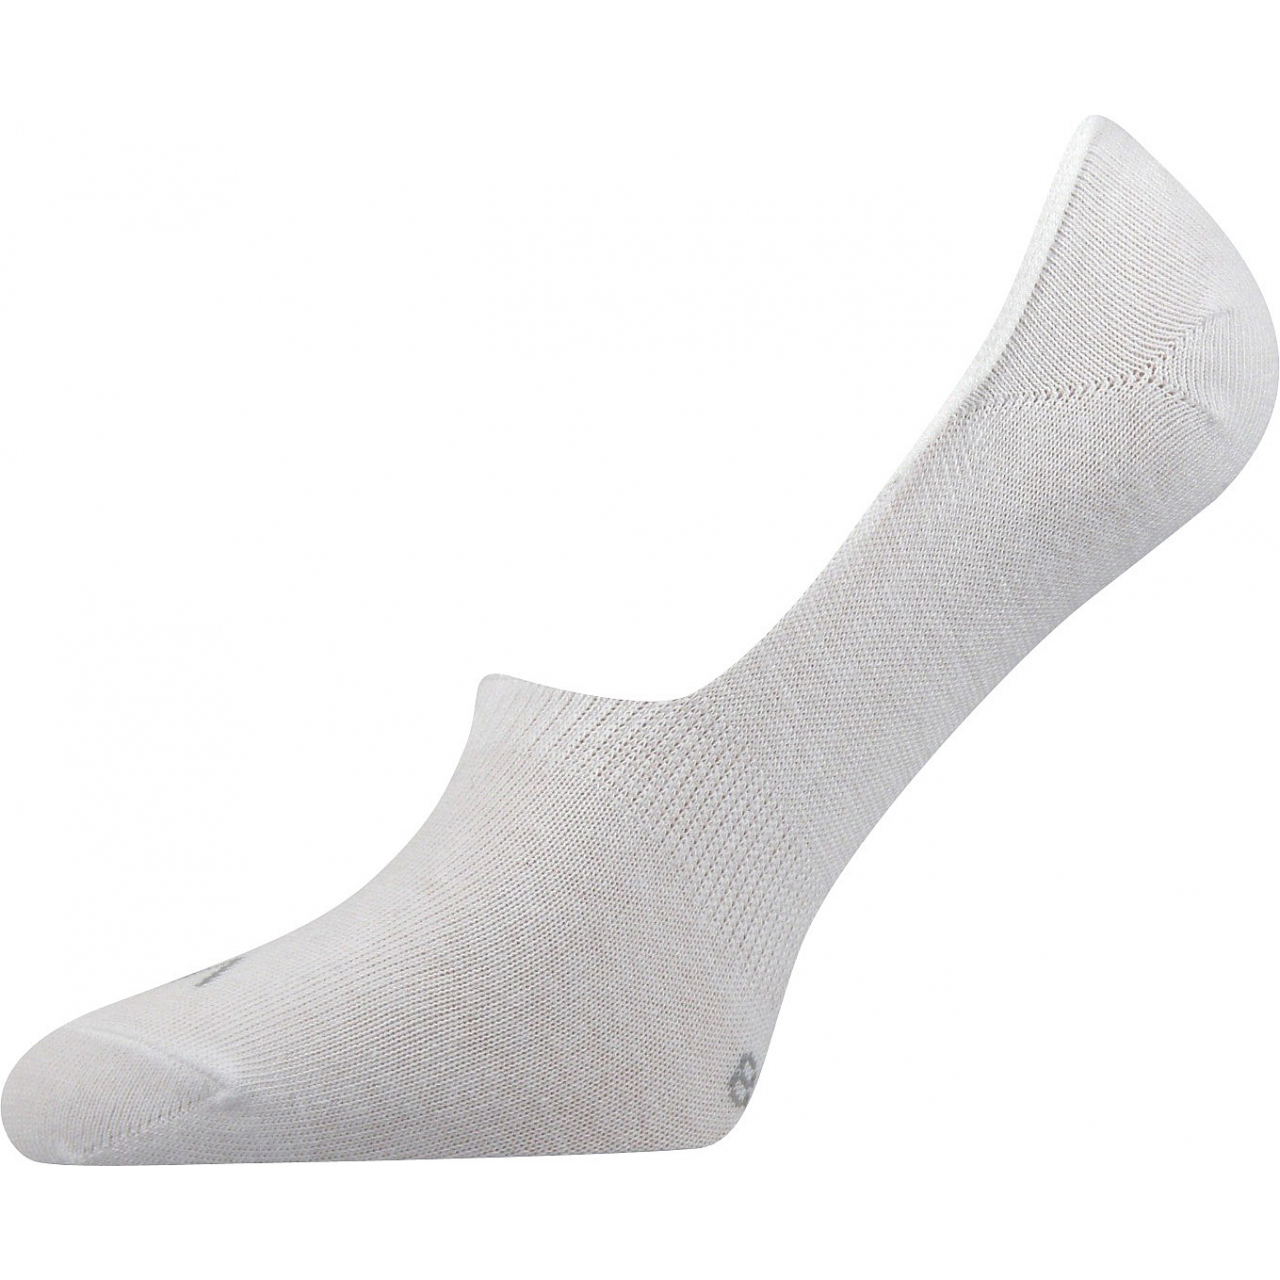 Ponožky unisex Voxx Verti - bílé, 39-42